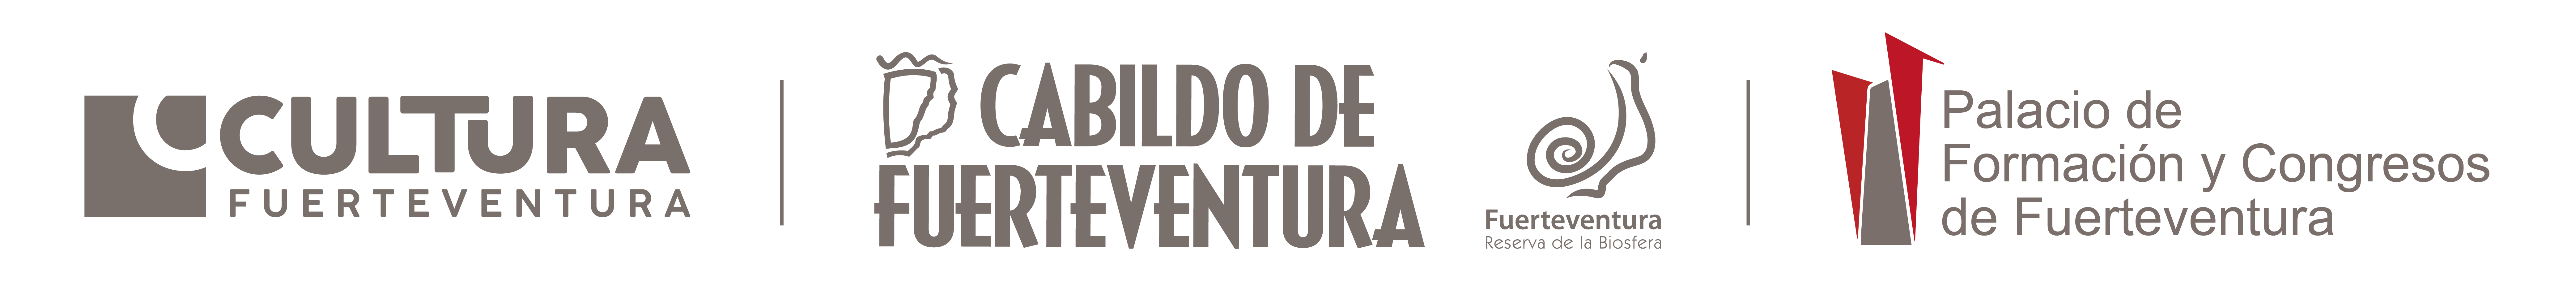 Logo_CulturaCabildo_Palacio.png (3)